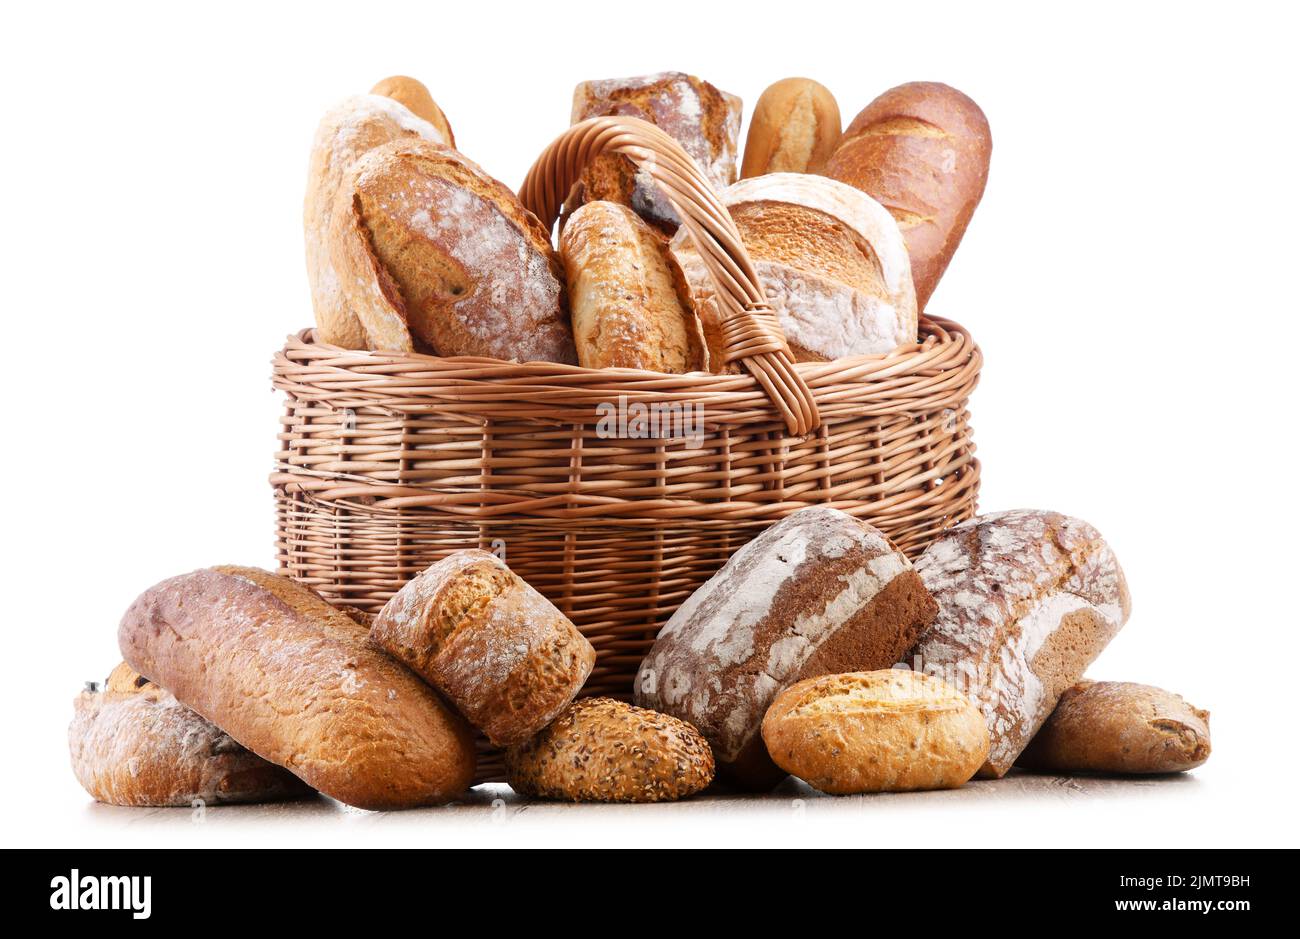 Panier en osier avec assortiment de produits de boulangerie, dont des pains  et des petits pains sur fond blanc Photo Stock - Alamy